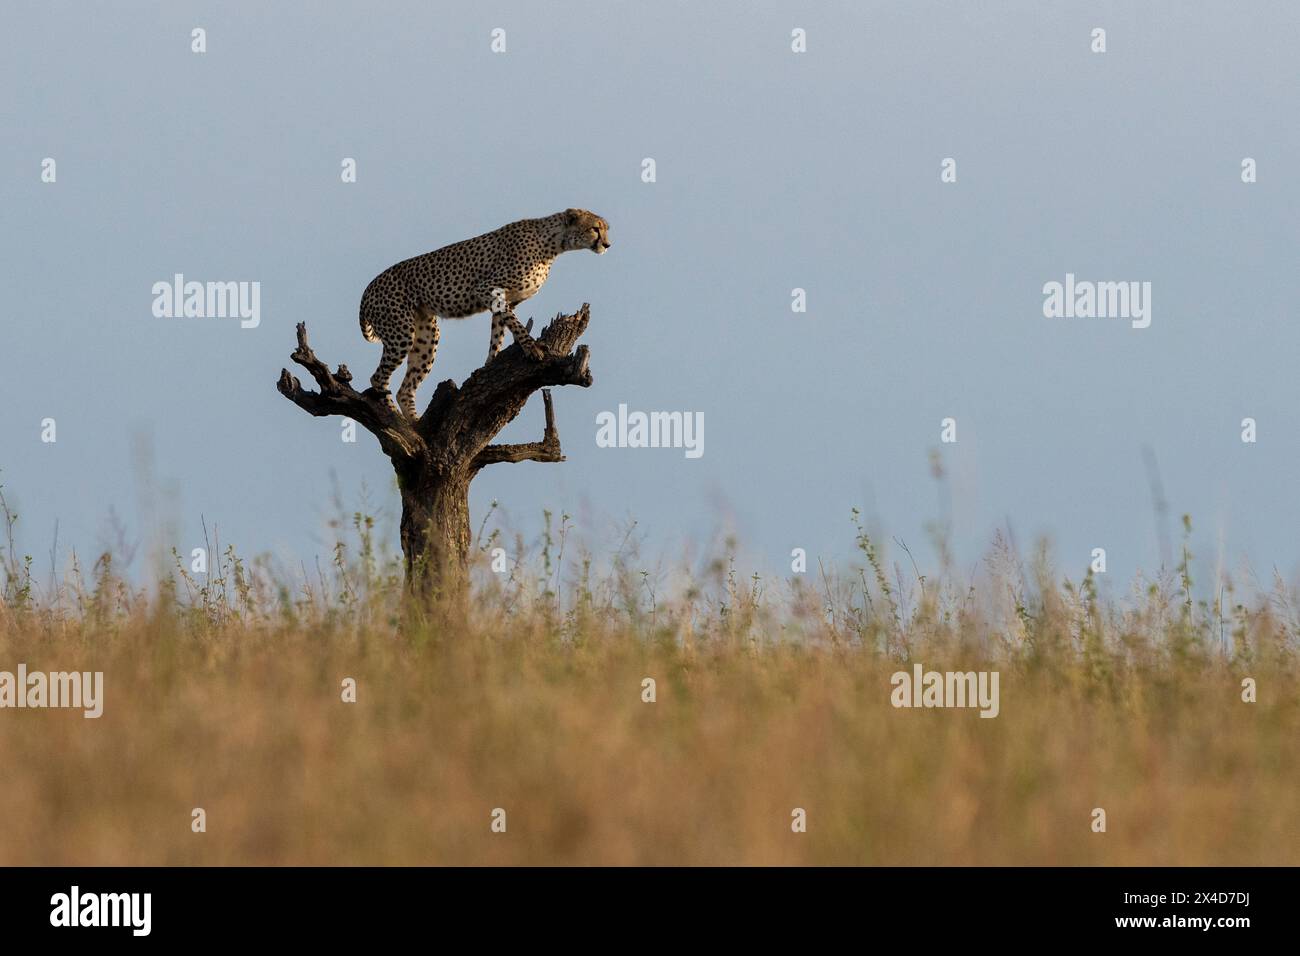 A cheetah, Acinonyx jubatus, surveys the savannah from a dead tree. Seronera, Serengeti National Park, Tanzania Stock Photo